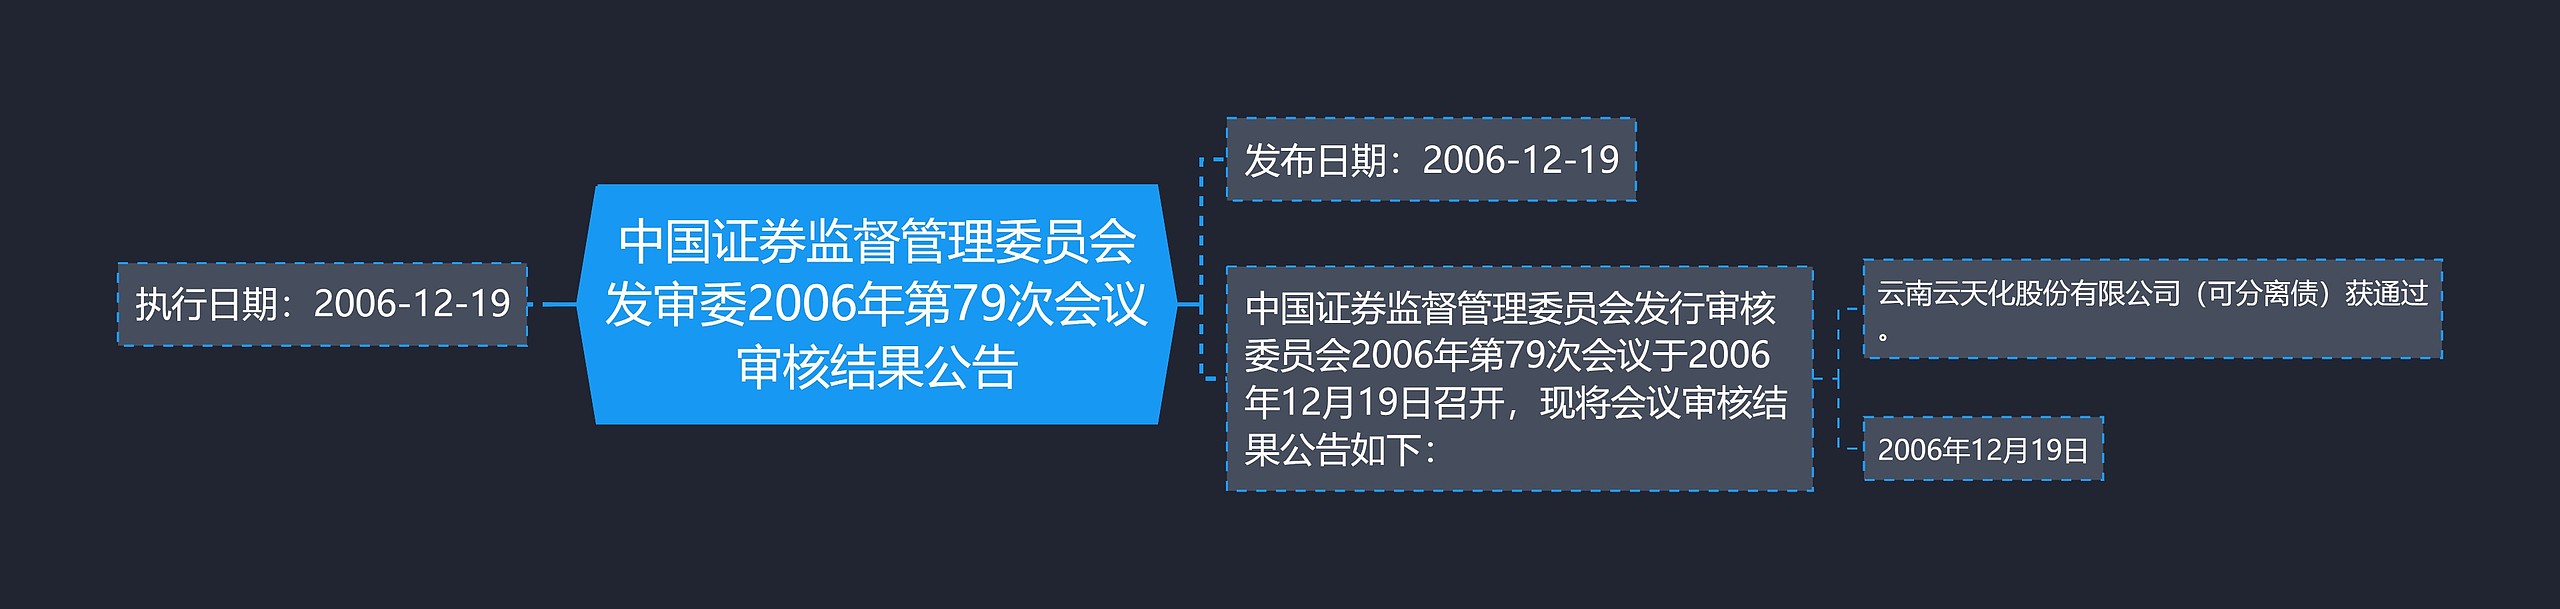 中国证券监督管理委员会发审委2006年第79次会议审核结果公告思维导图